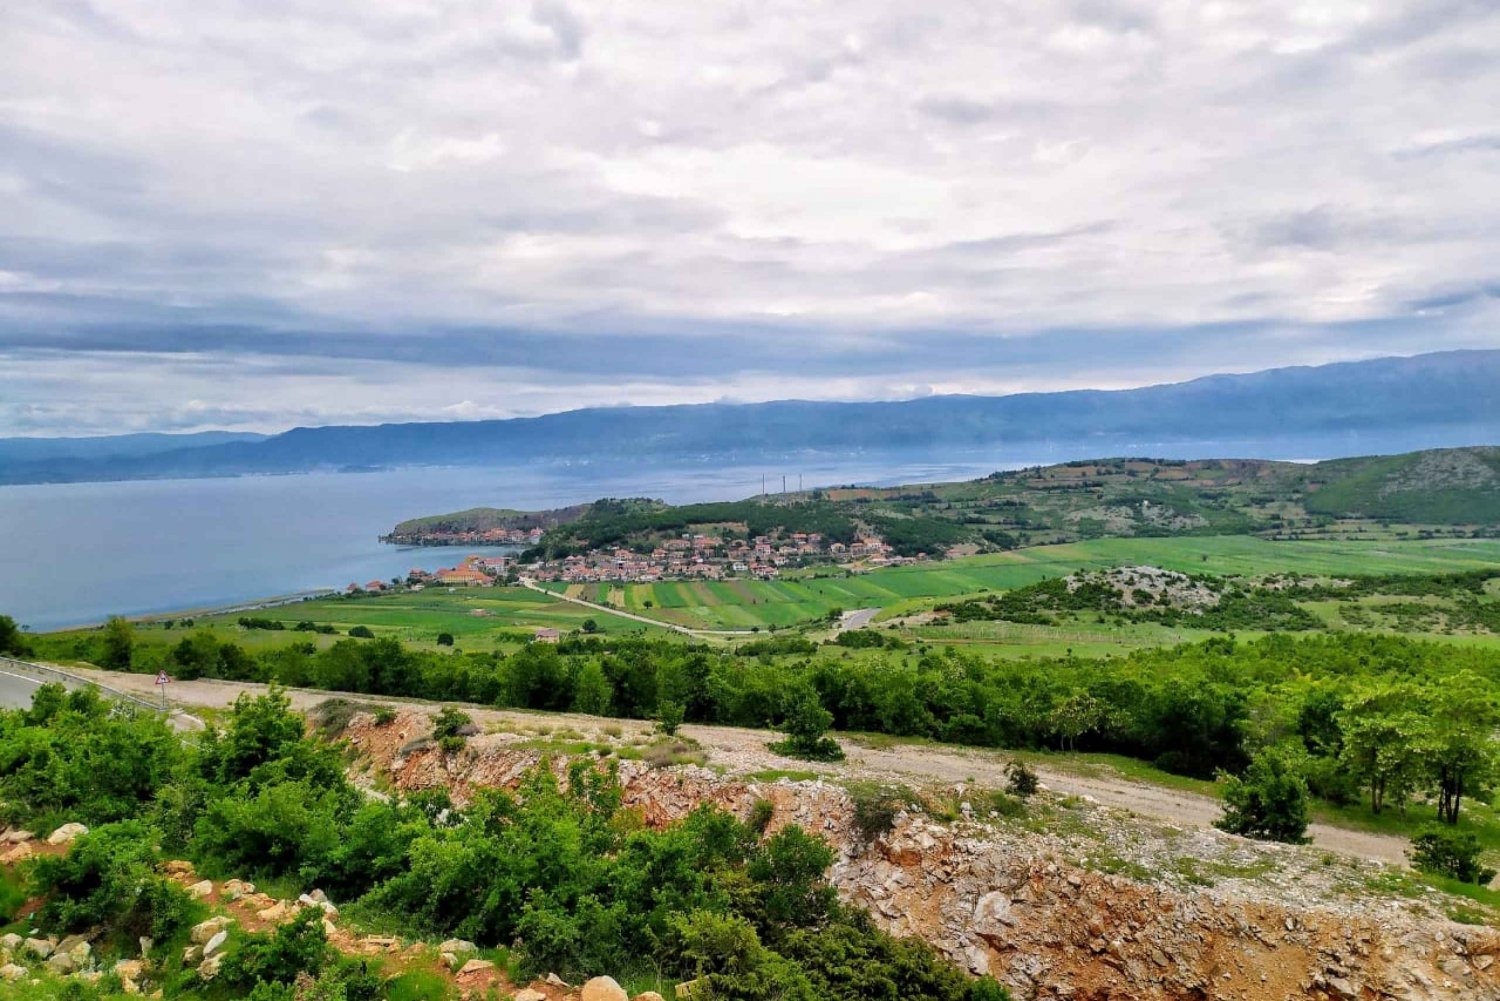 From Tirana: Day Trip to Korca, Pogradec and Ohrid Lake